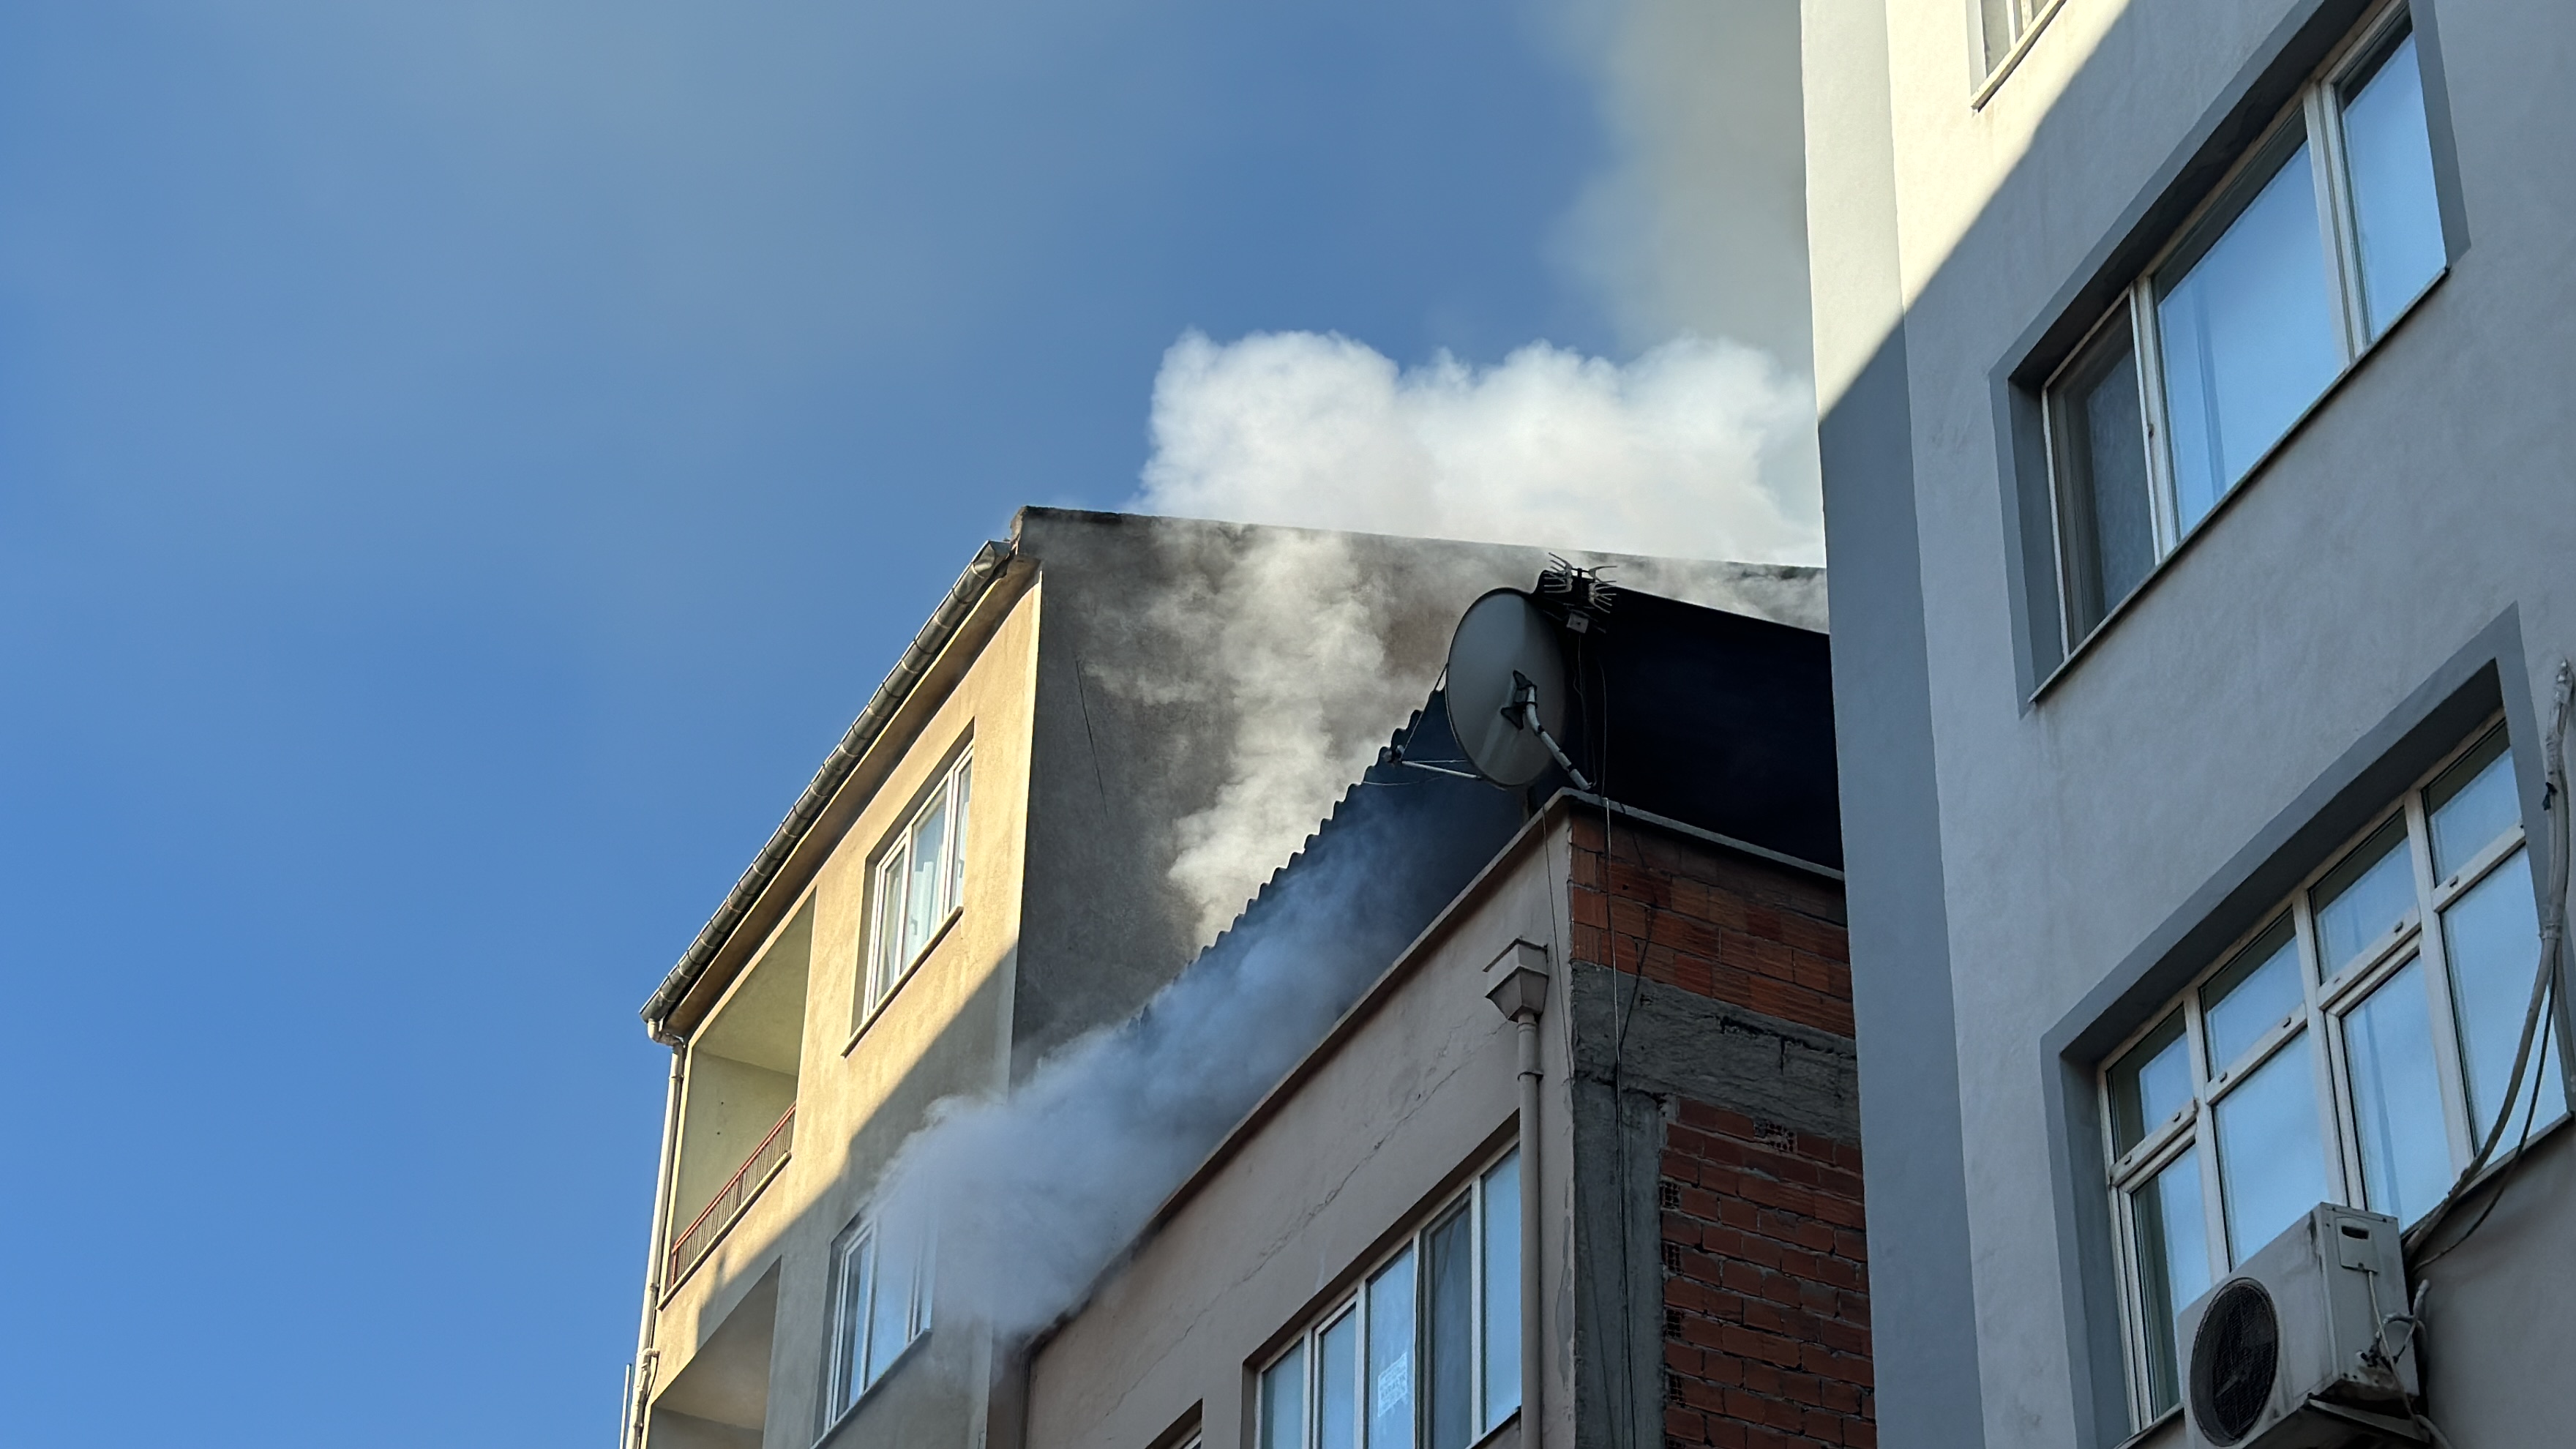 Balıkesir'de çatı katında yangın